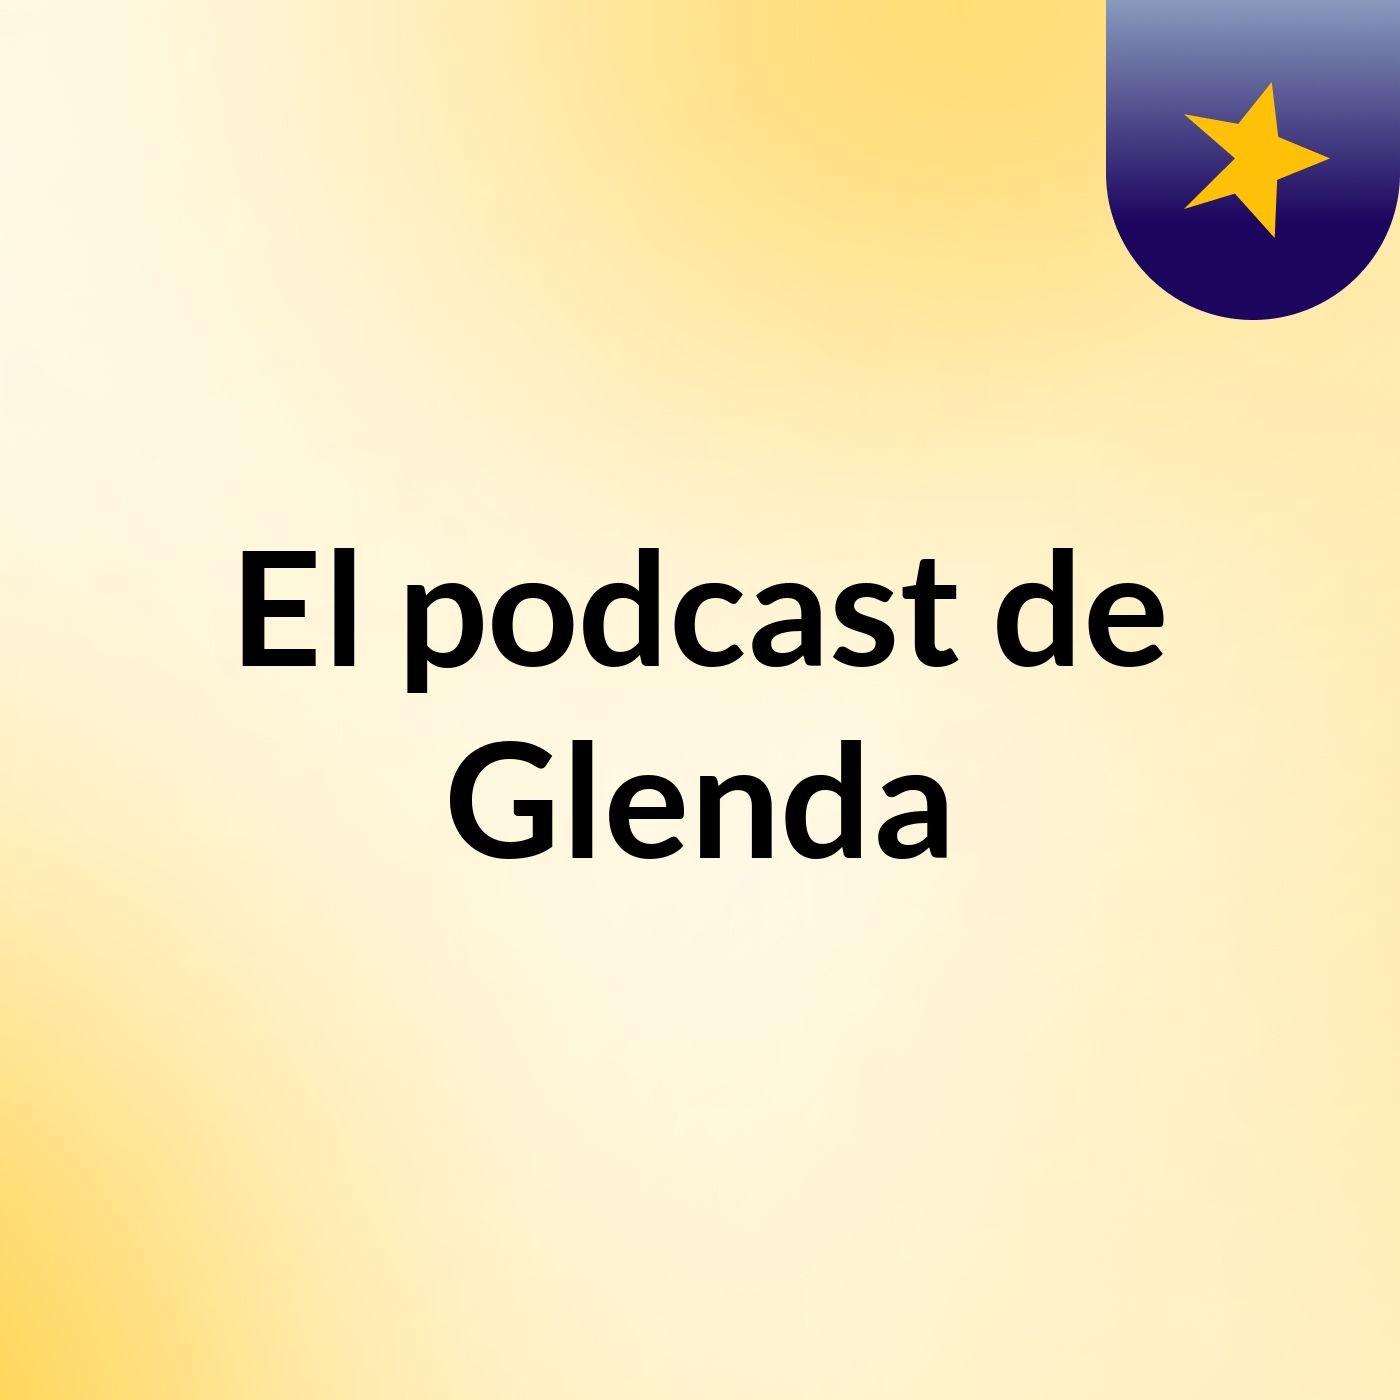 El podcast de Glenda